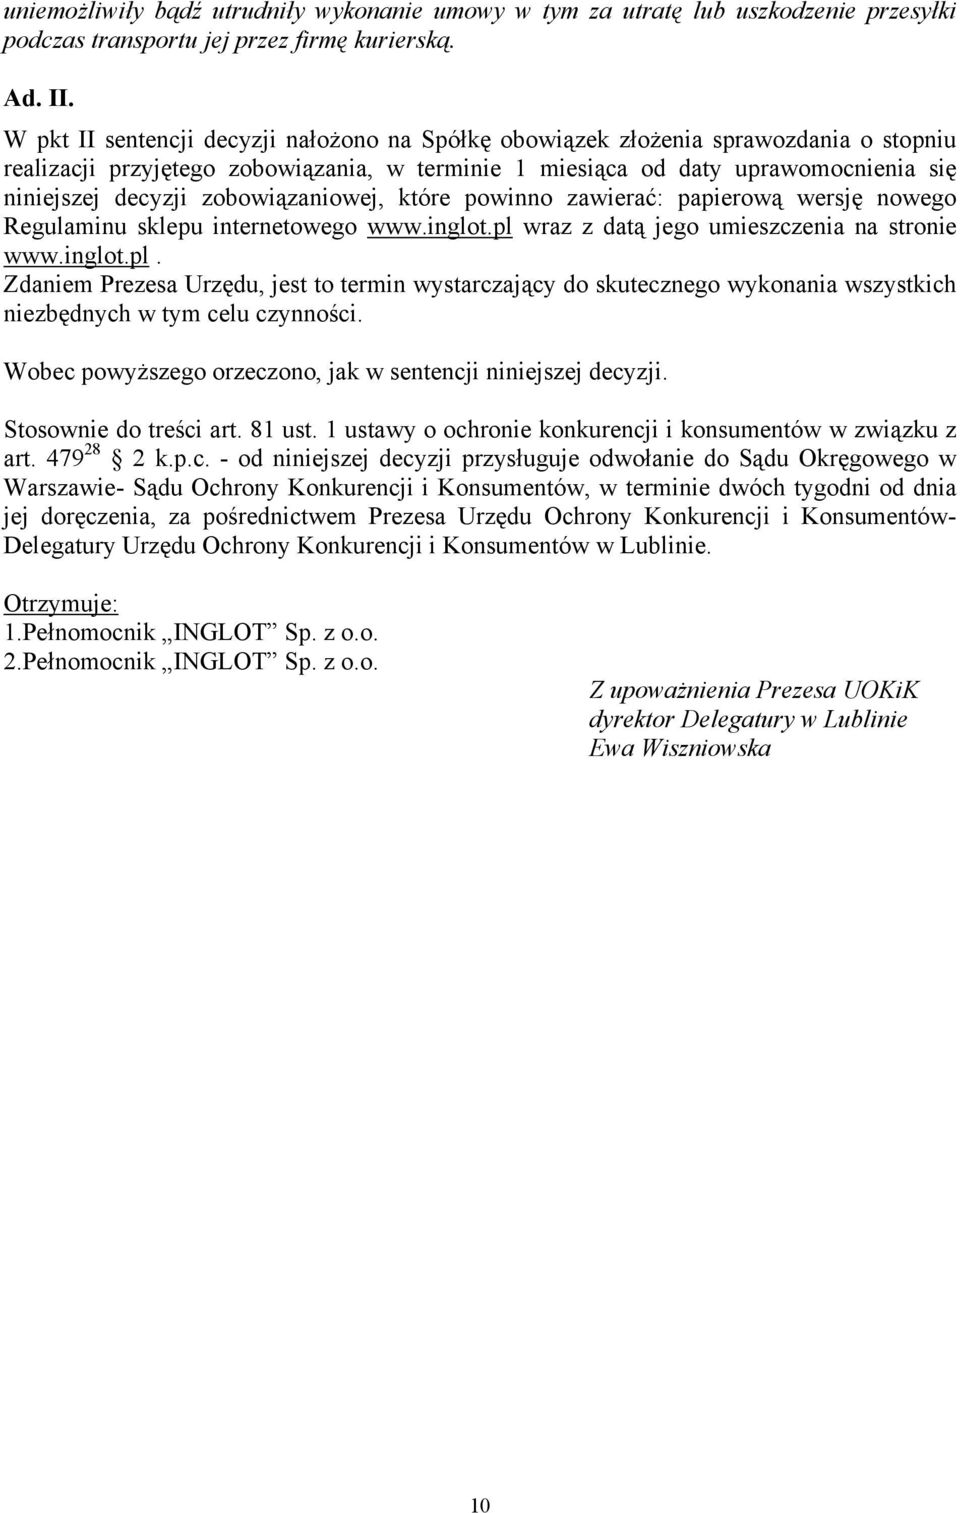 zobowiązaniowej, które powinno zawierać: papierową wersję nowego Regulaminu sklepu internetowego www.inglot.pl 